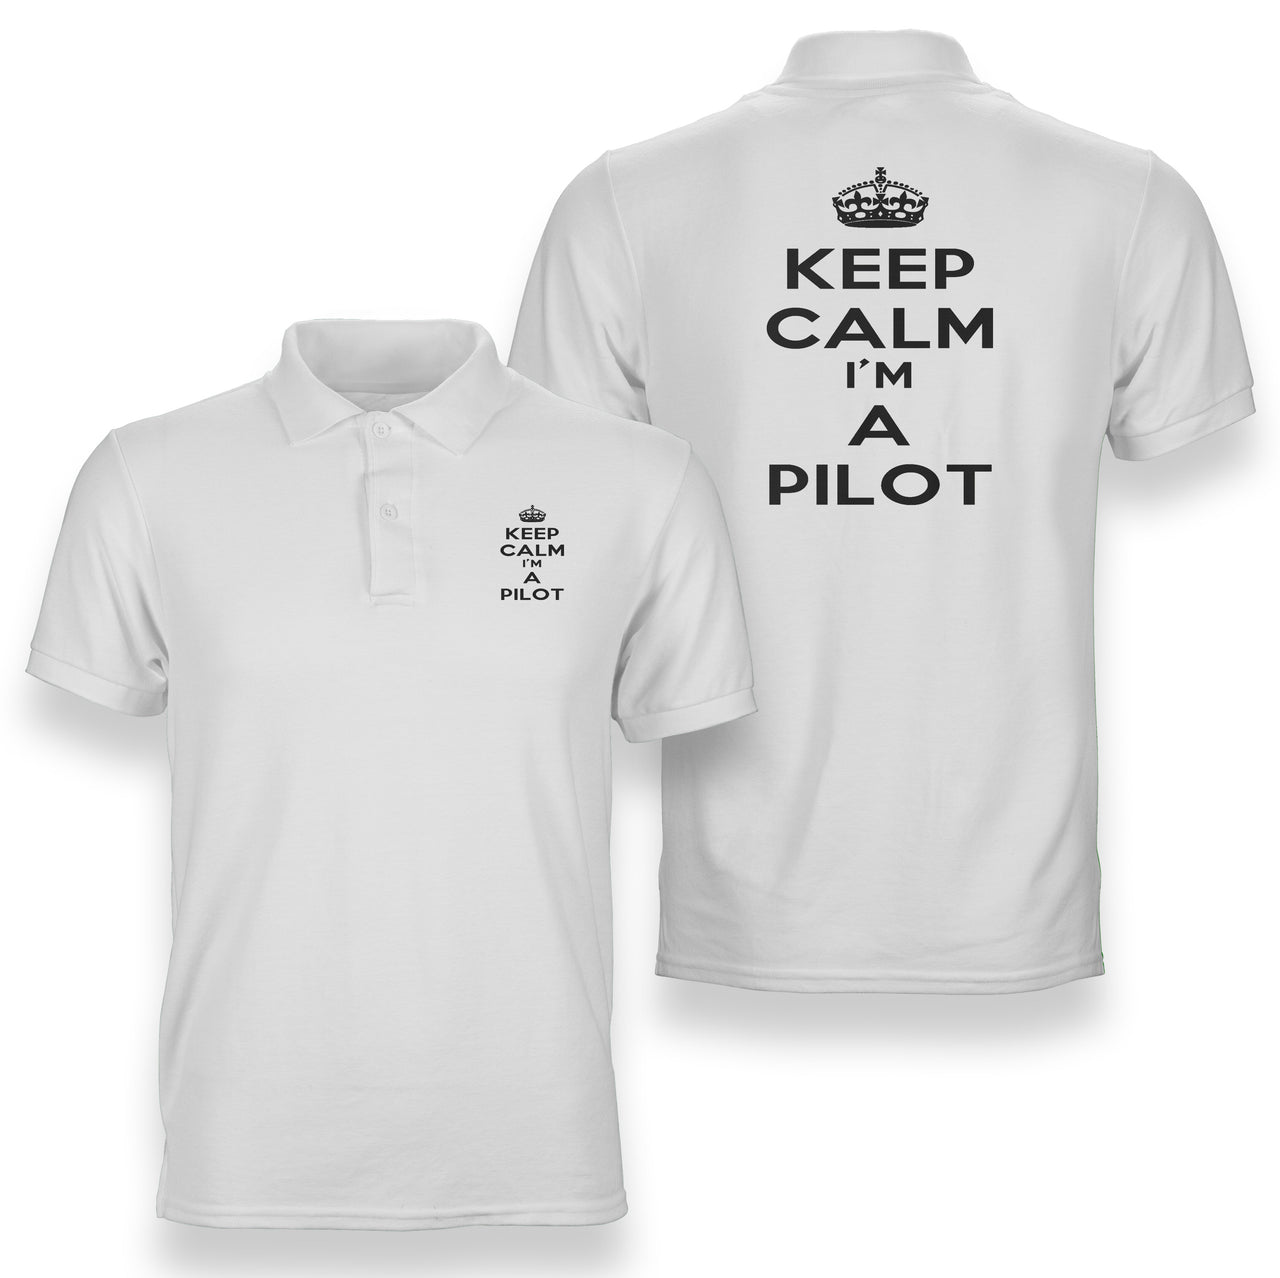 Keep Calm I'm a Pilot Designed Double Side Polo T-Shirts